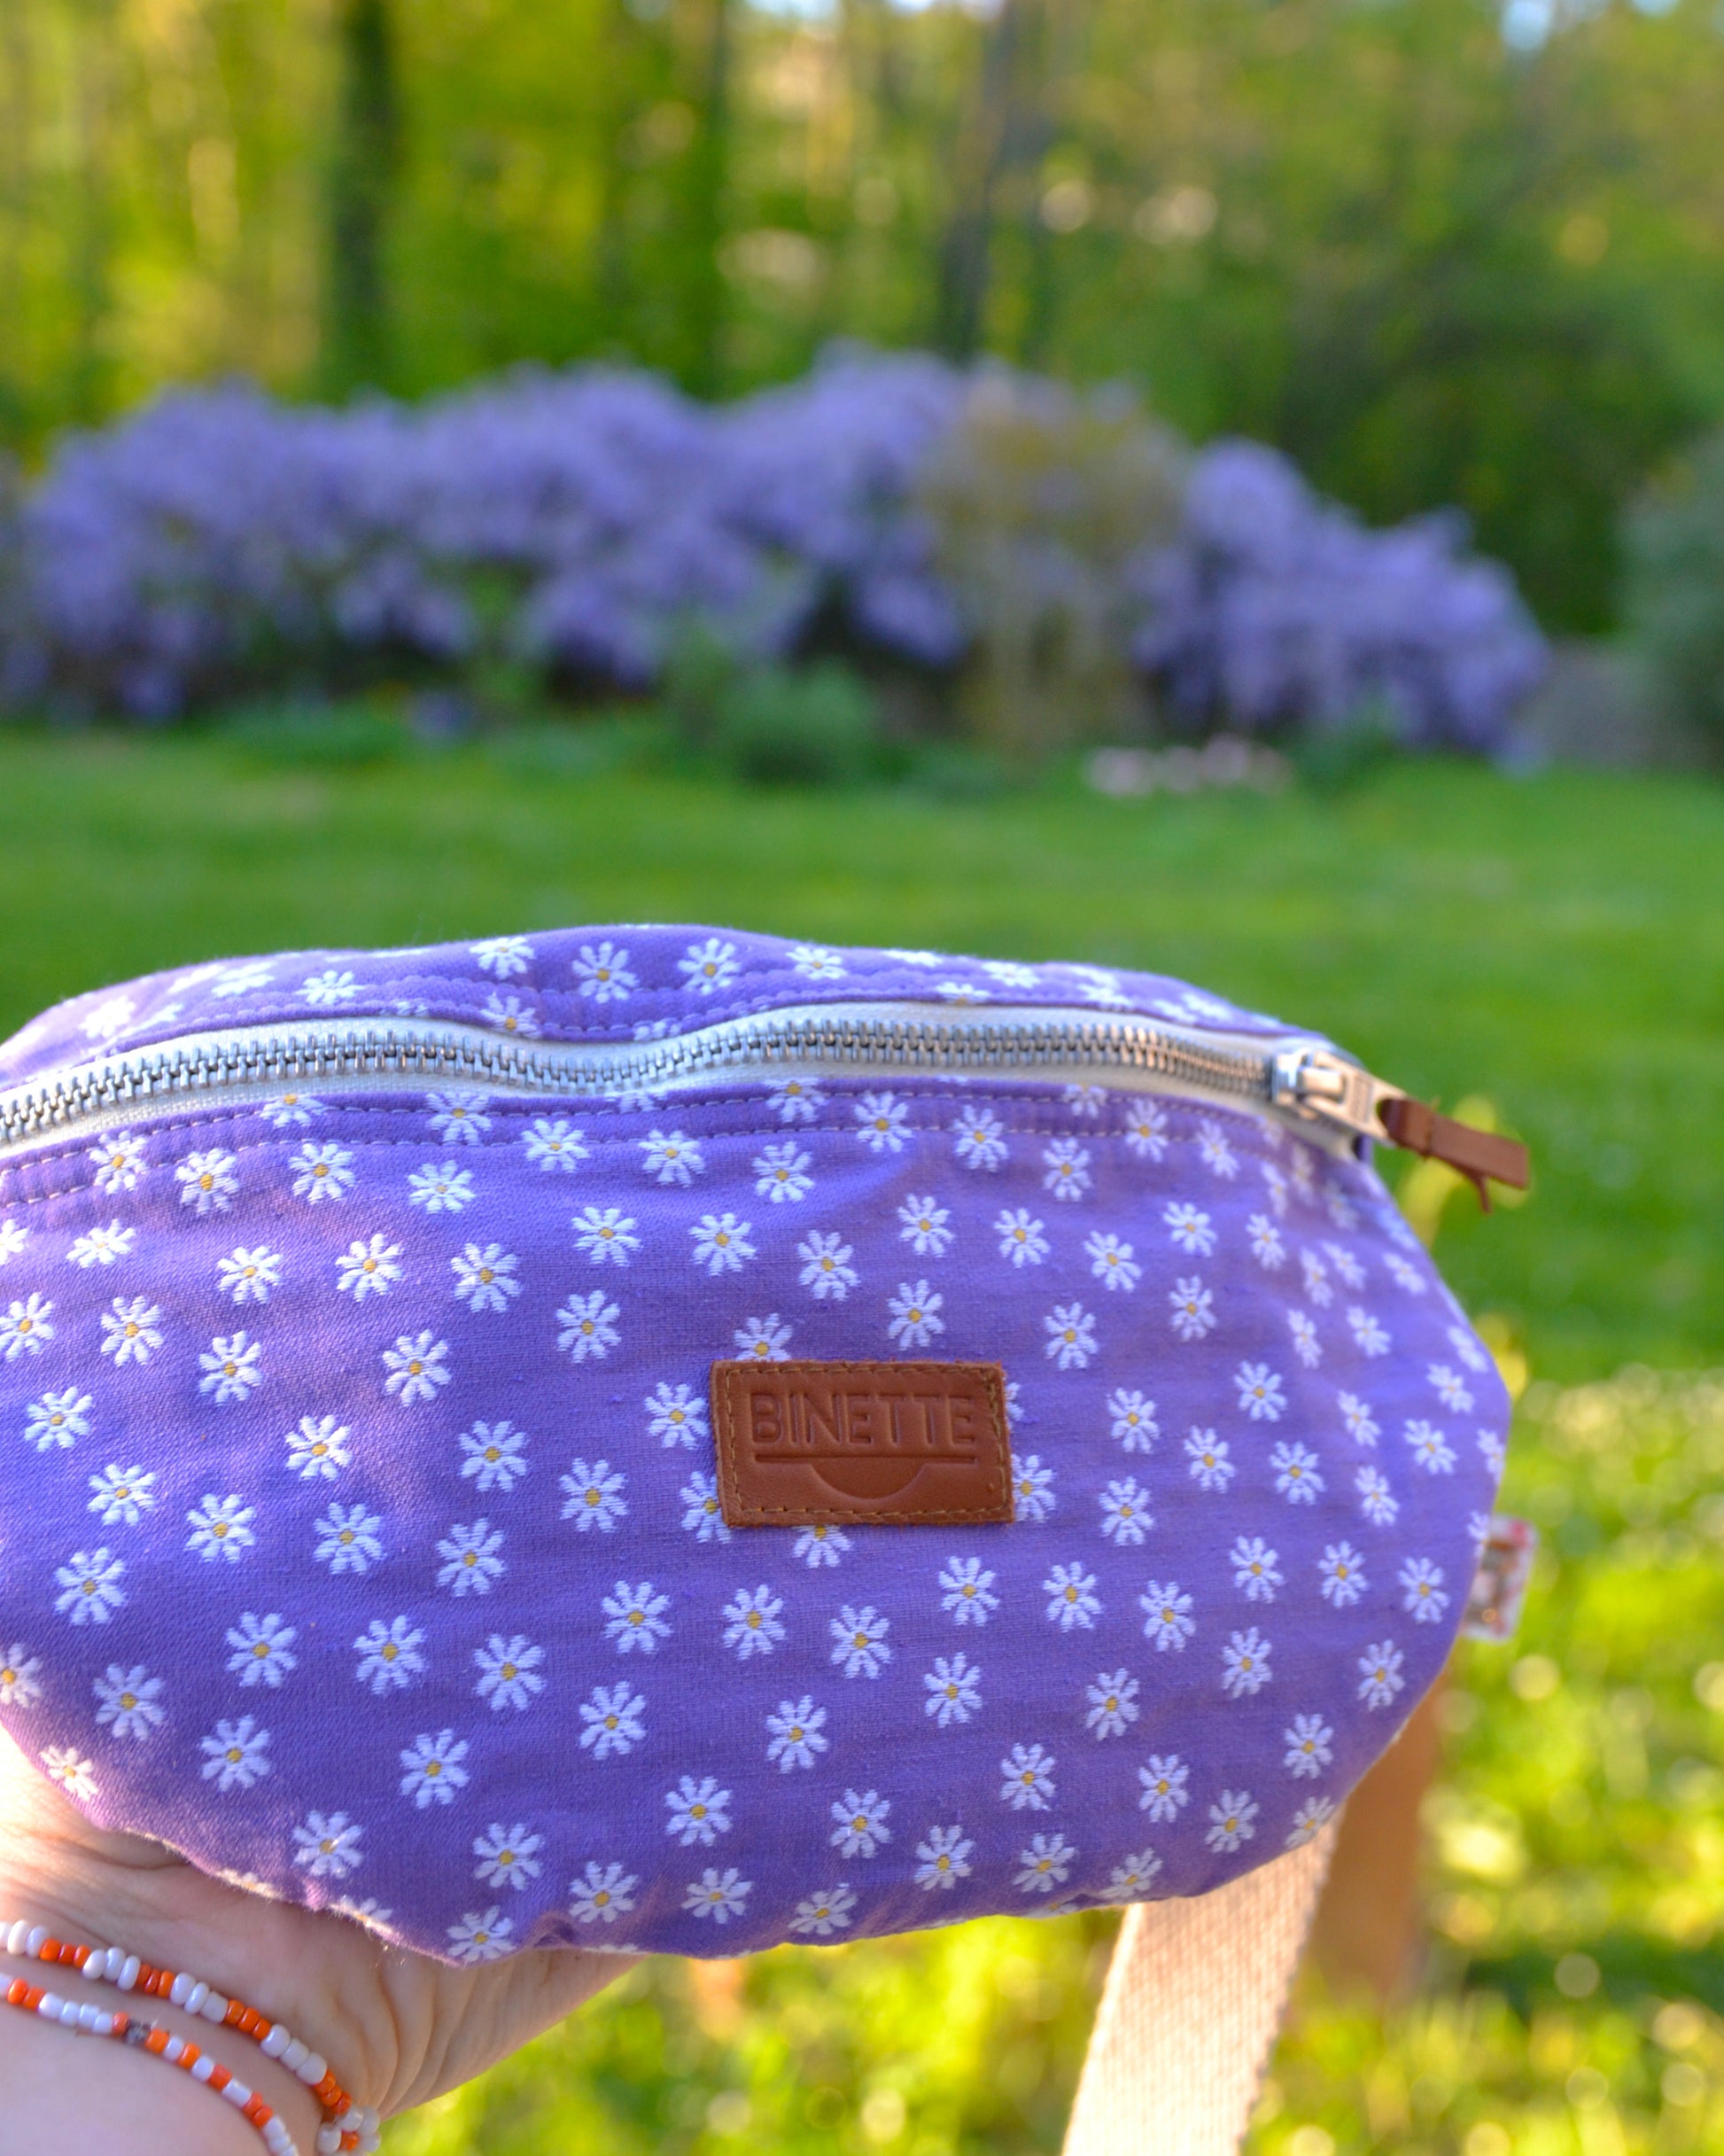 Découvrez le sac banane Marguerite Violette dans toute sa splendeur ! Cette photo en gros plan met en valeur son motif floral éclatant et sa couleur violette vibrante. Pratique et stylé, ce sac devient rapidement un indispensable de cette saison estivale.